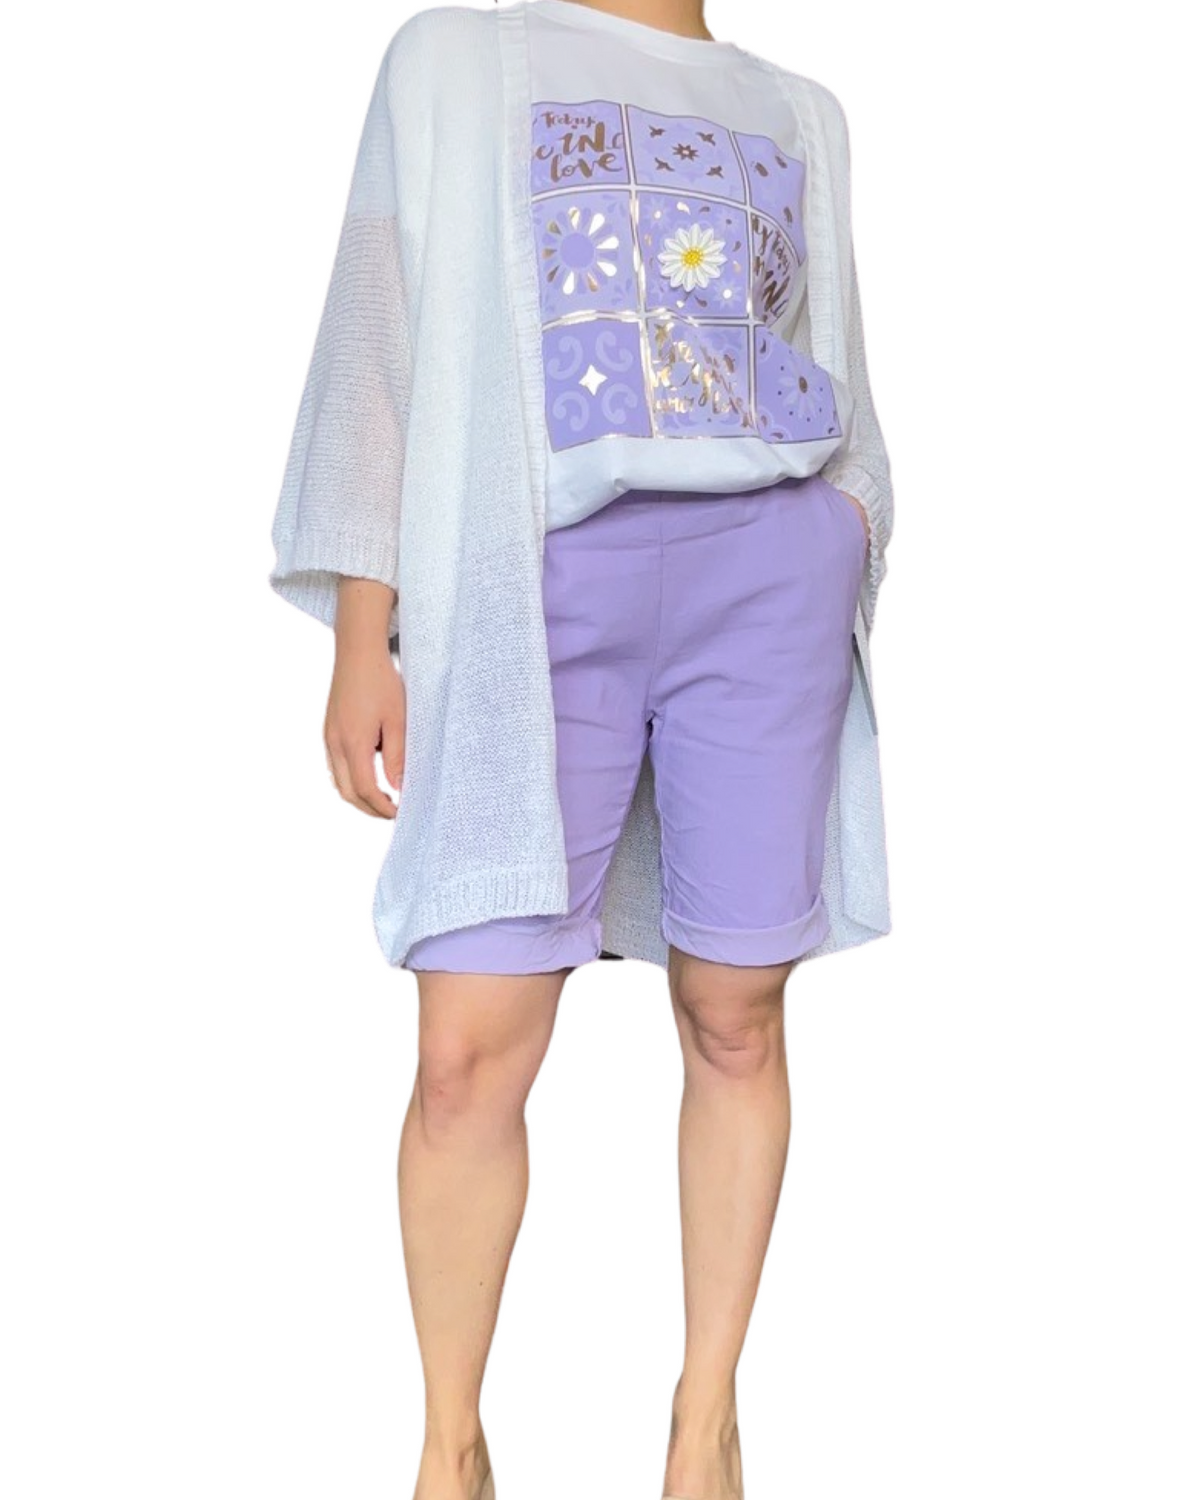 Bermuda lilas pour femme à taille élastique avec cordon avec cardigan blanc et t-shirt.